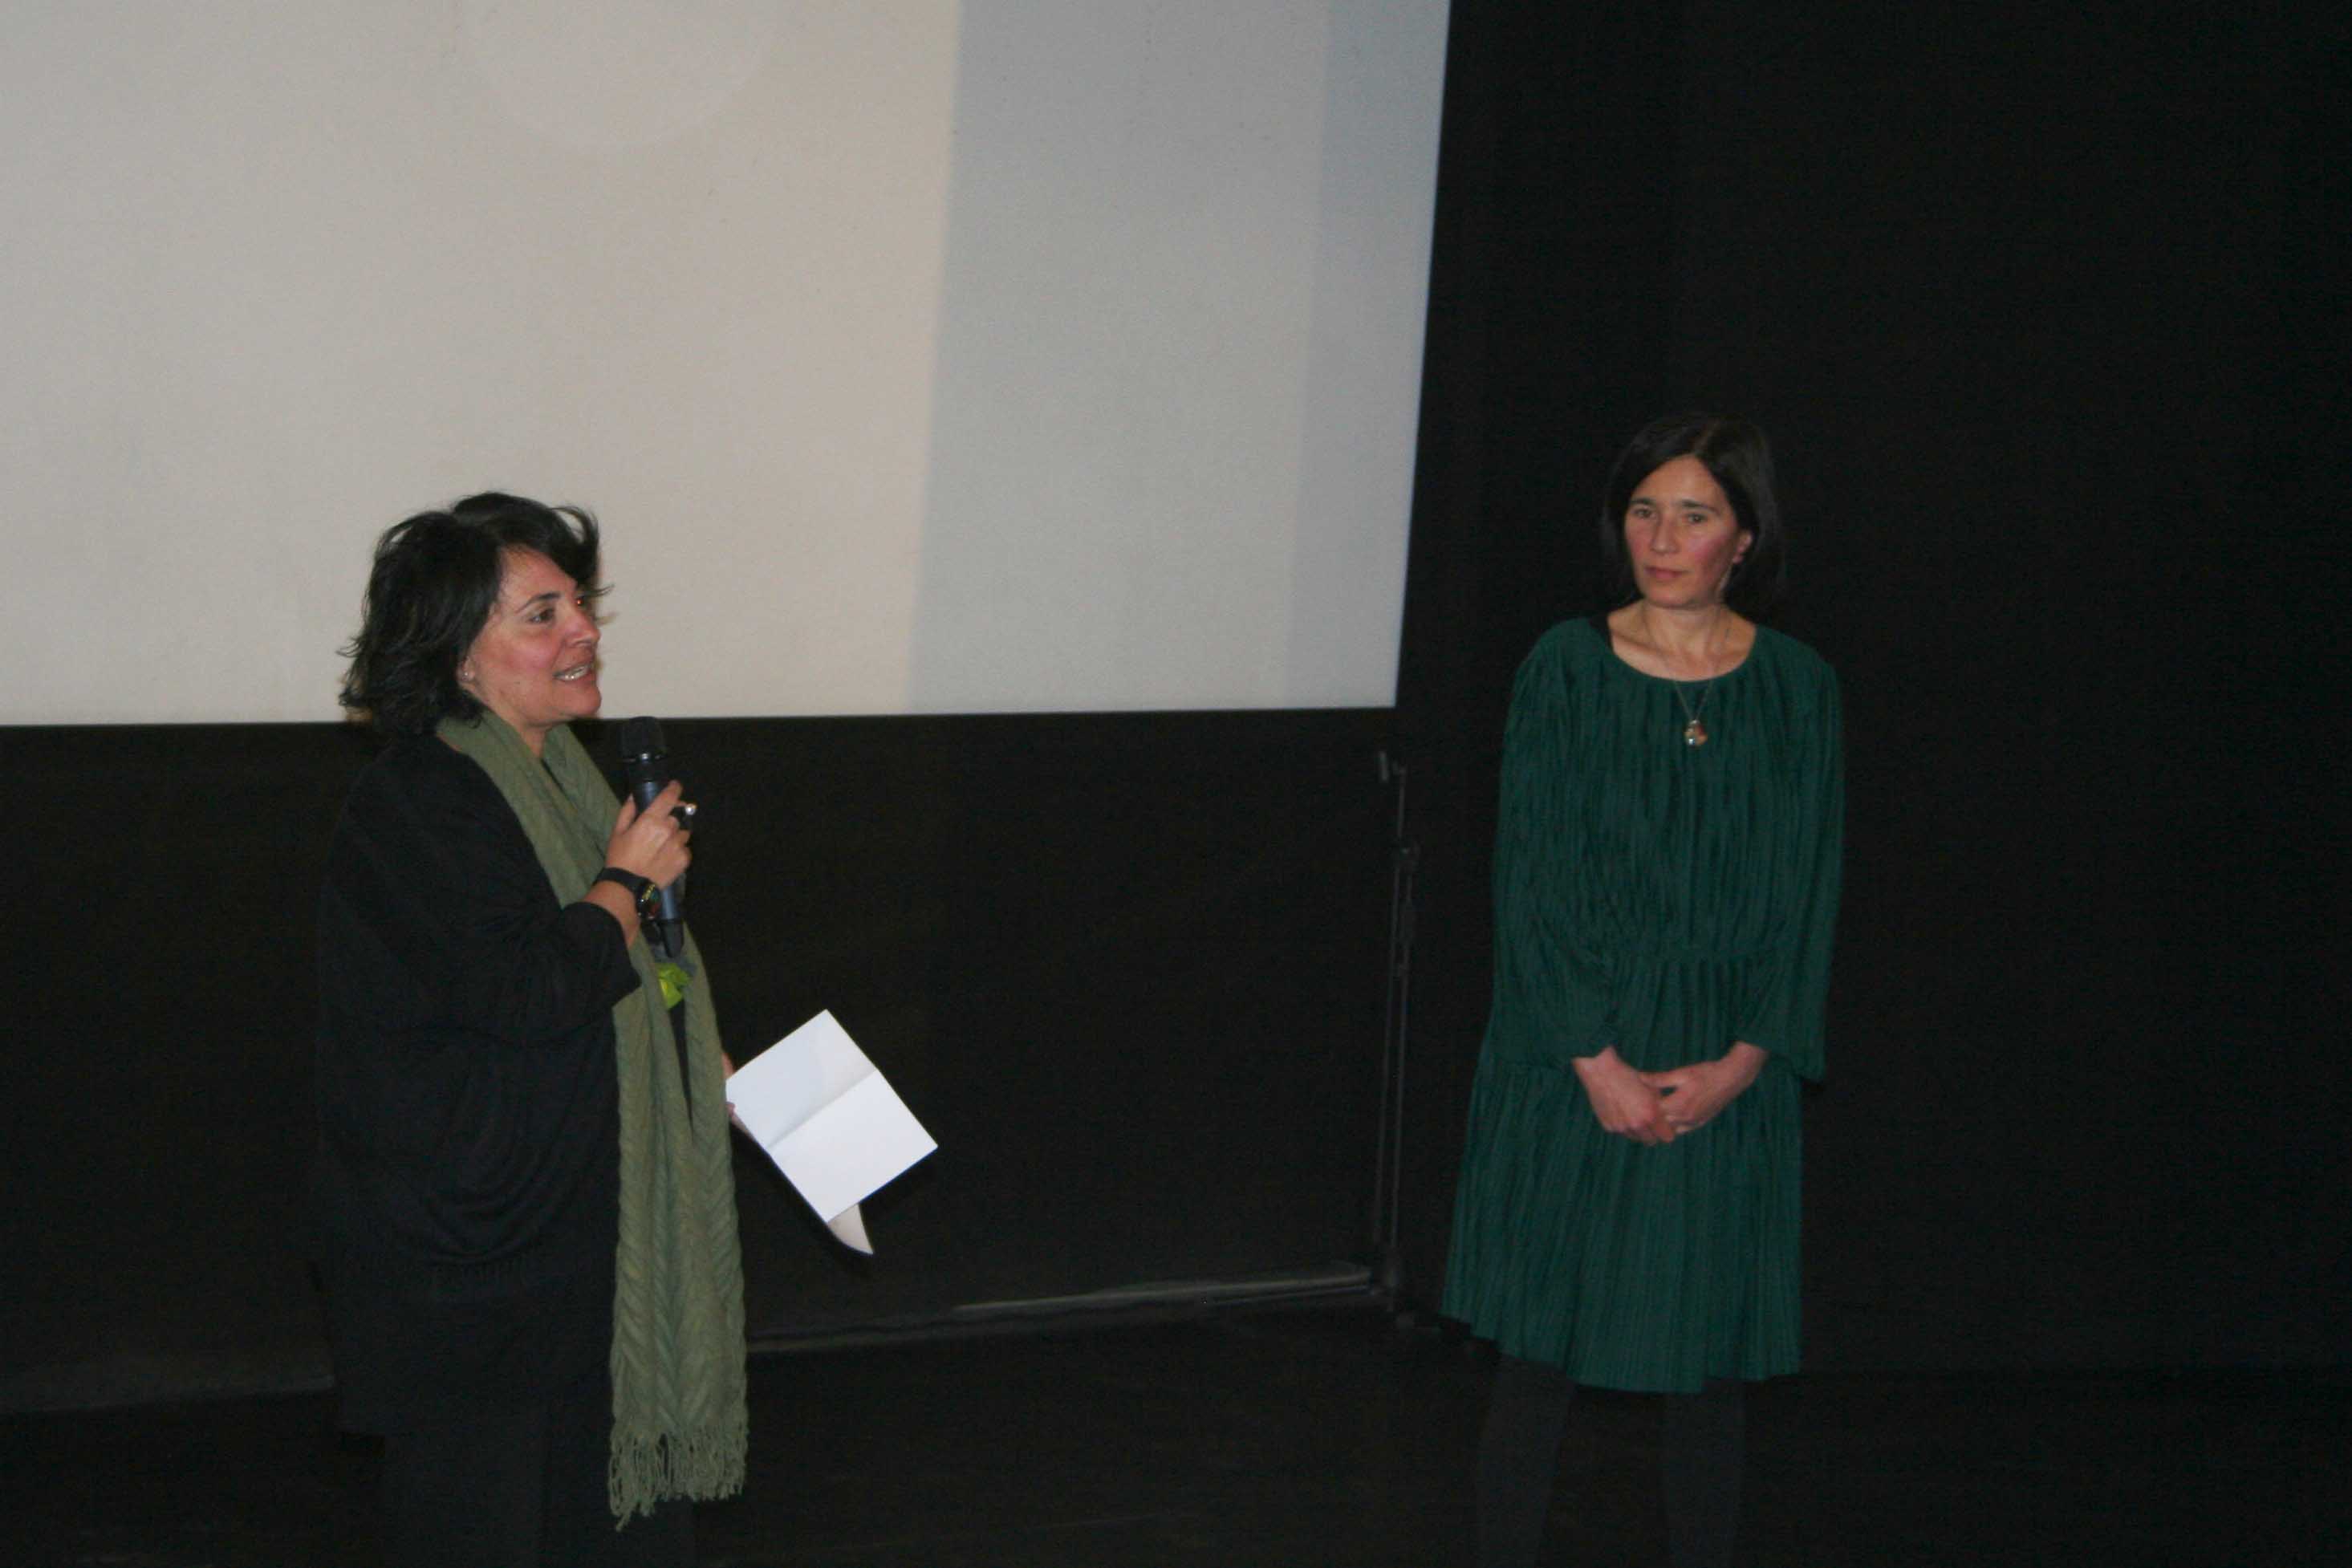 Un momento dell'intervento di Stefania Rimini, docente Unict, e Santina Arena, organizzatrice dell’evento